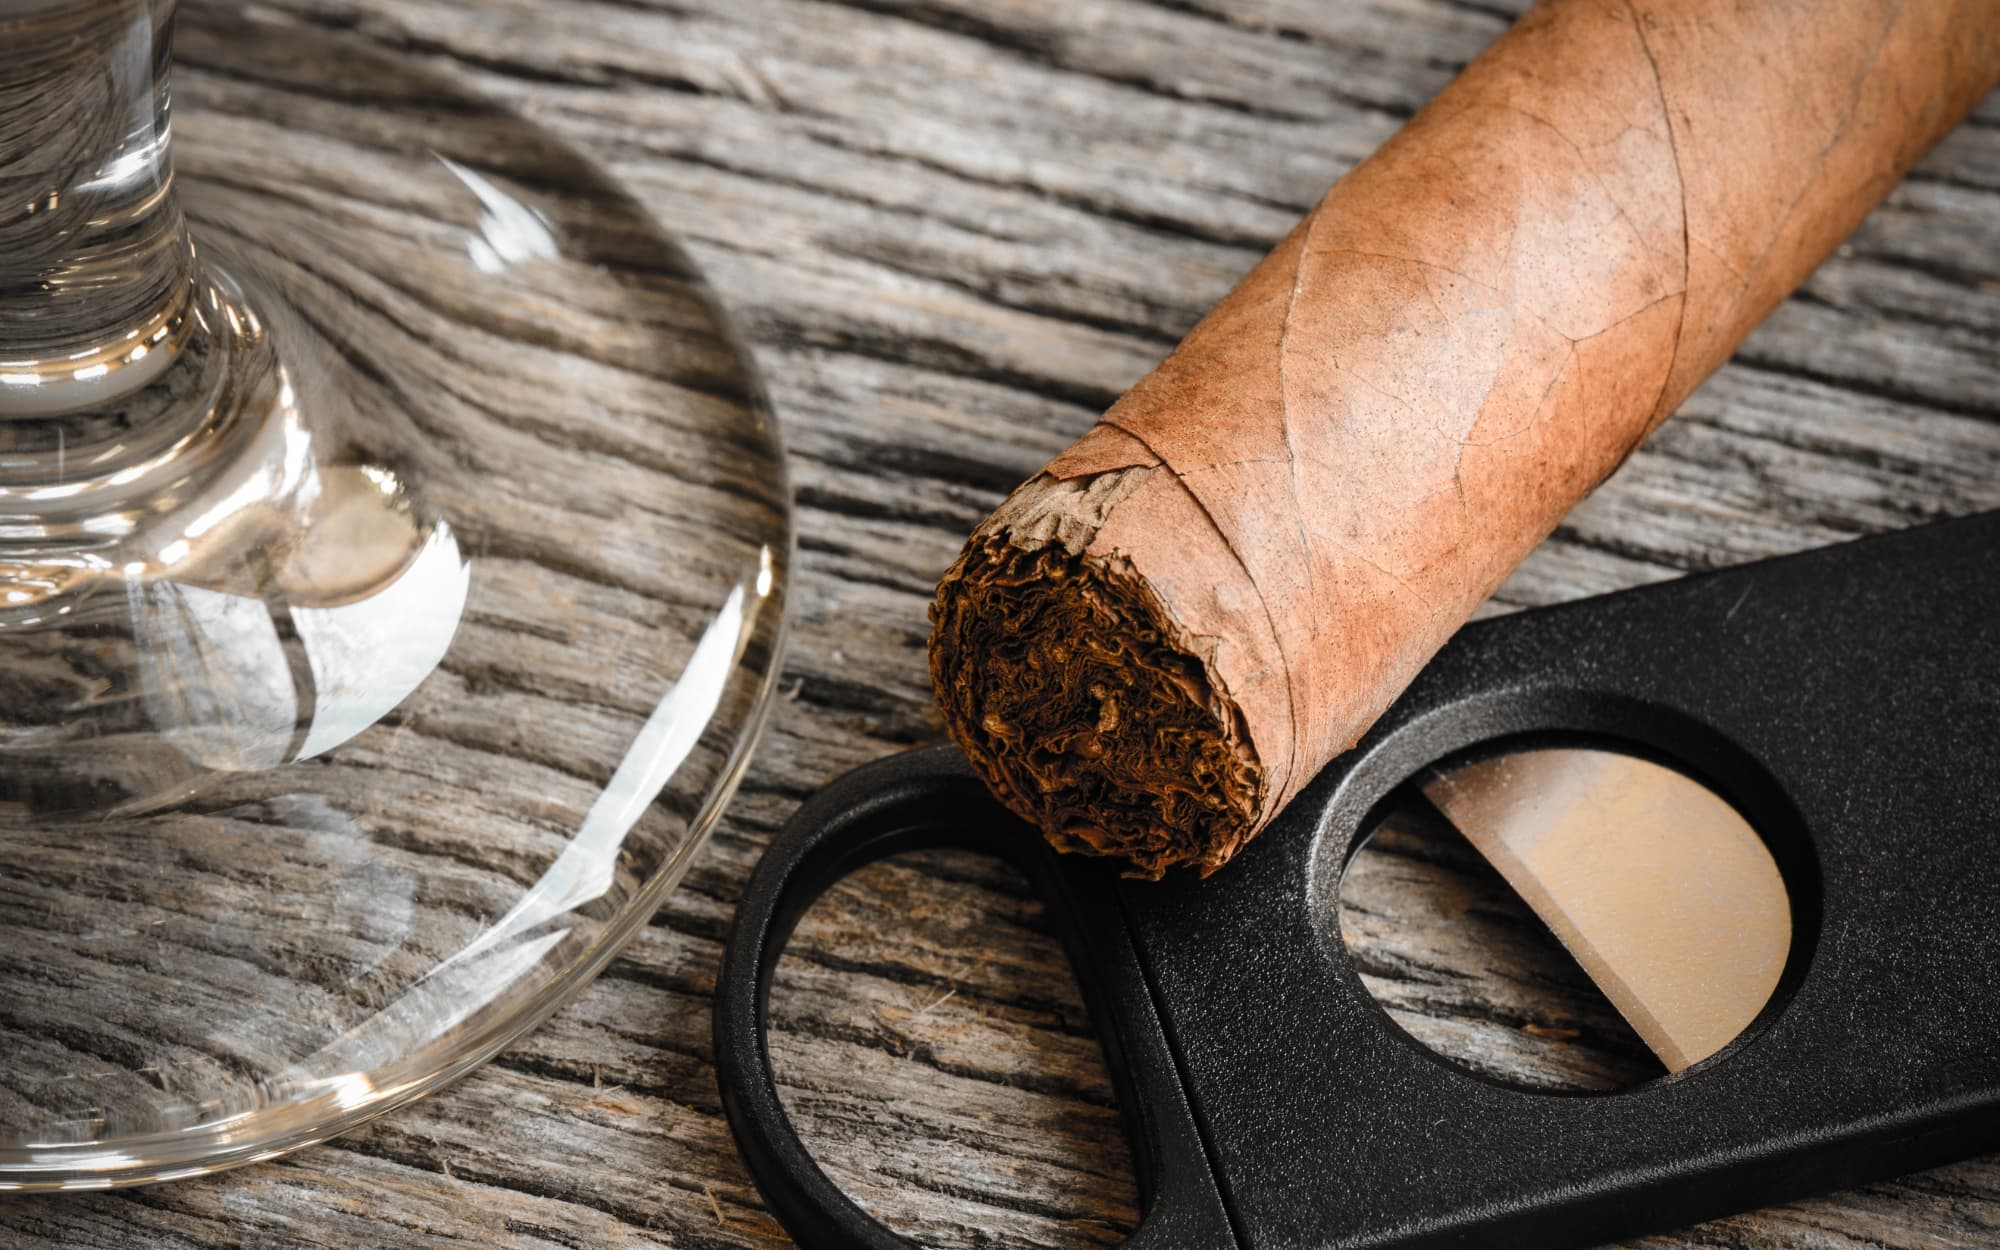 Cigar cutter next to an unlit cigar and drinking glass.